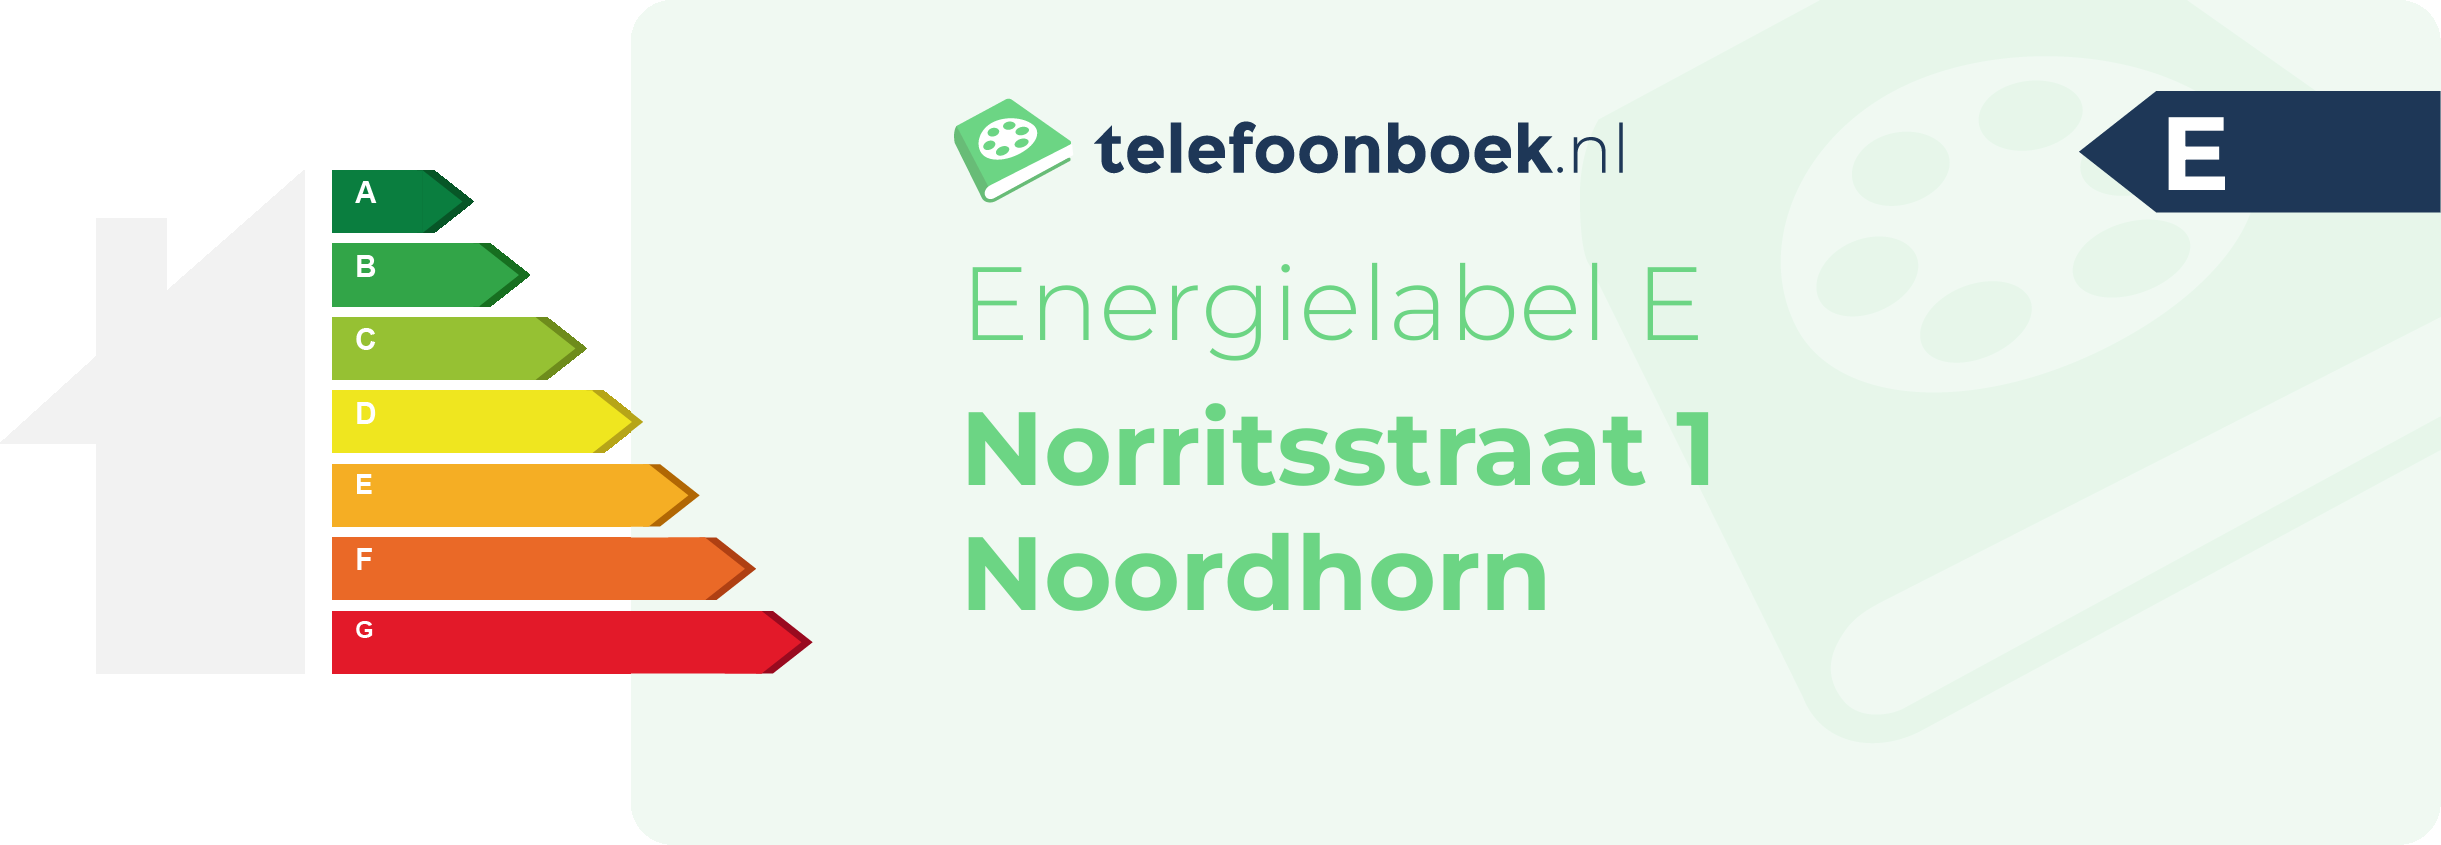 Energielabel Norritsstraat 1 Noordhorn